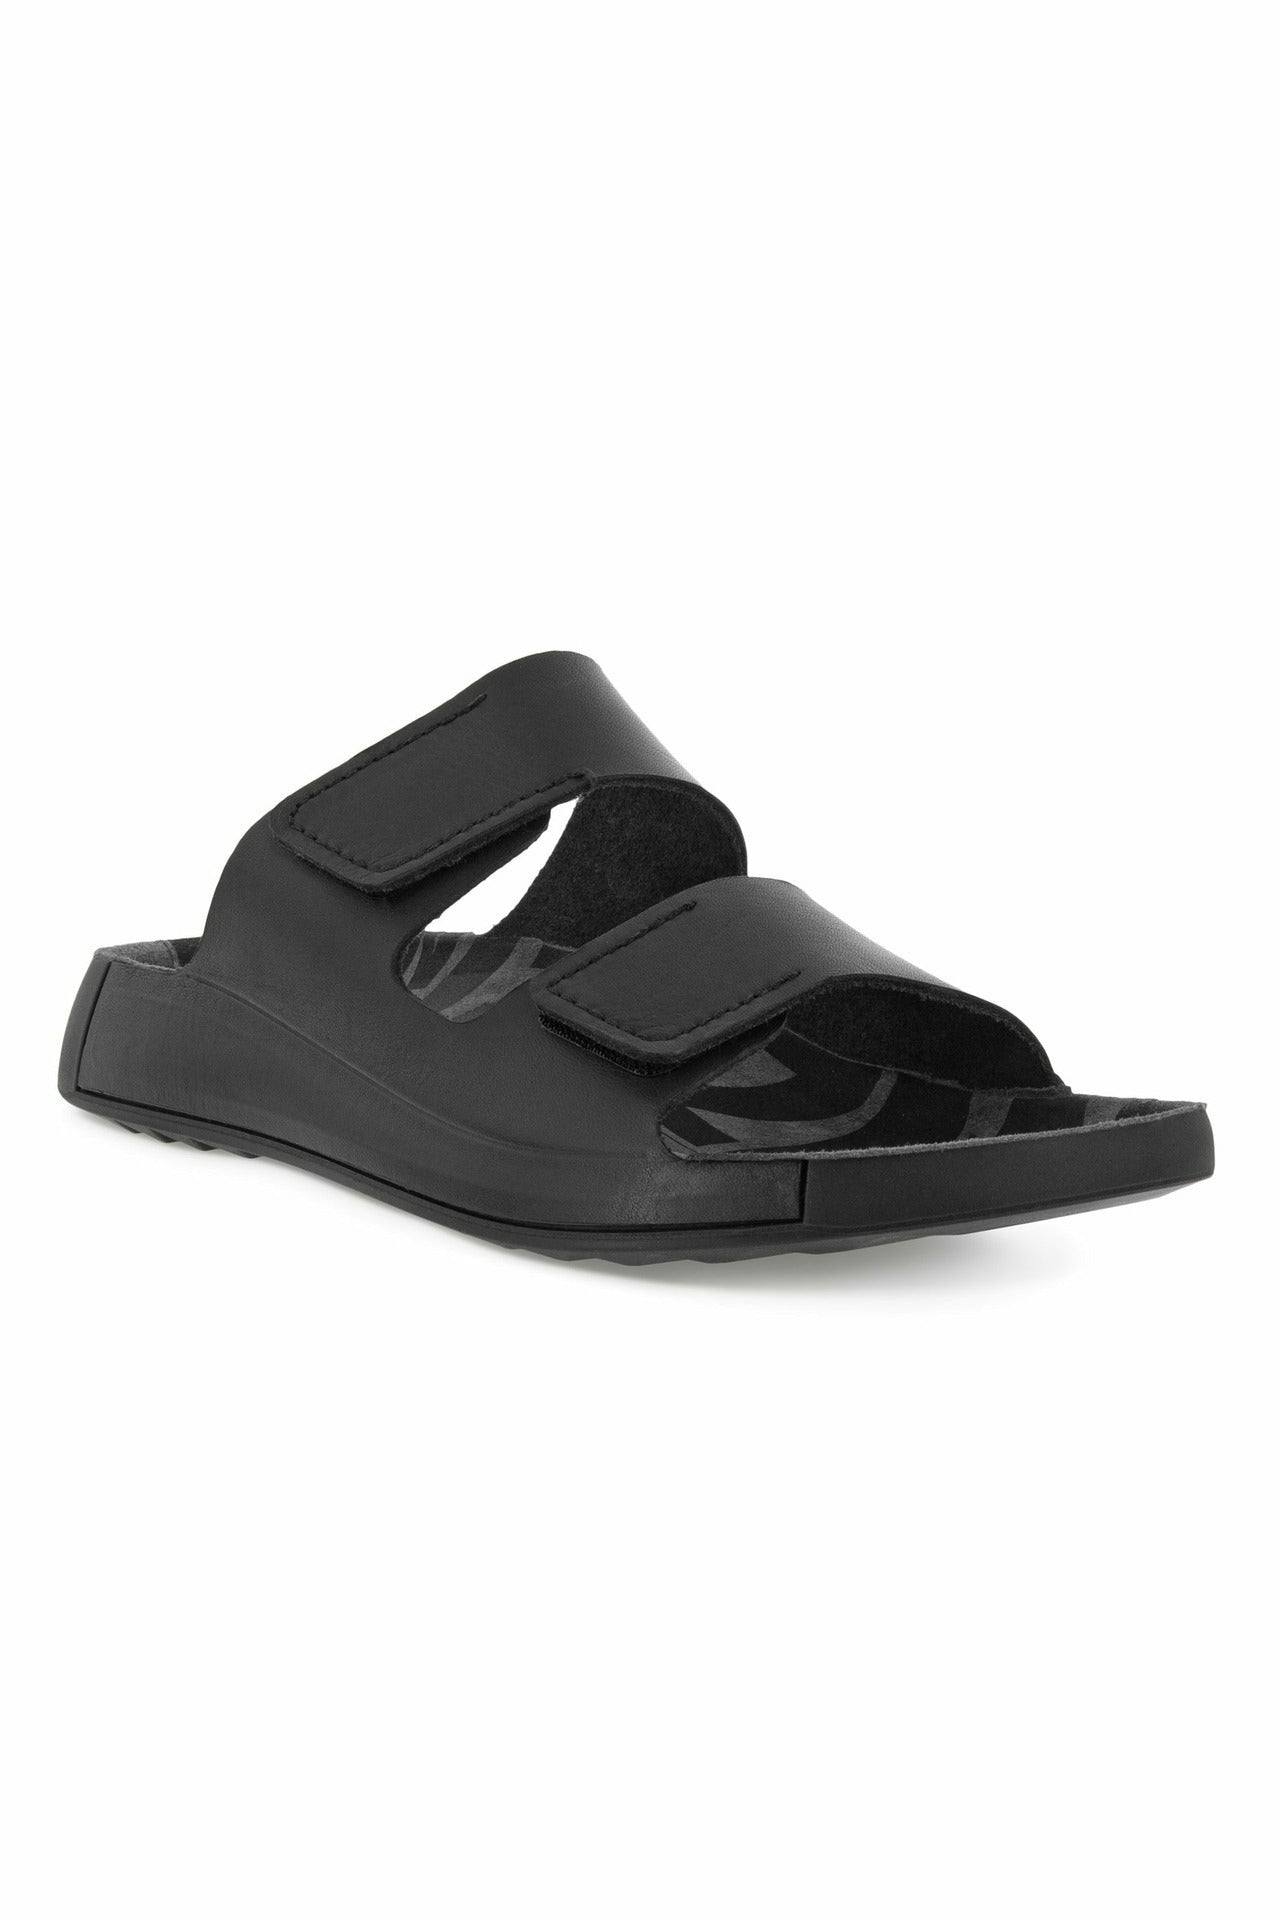 ECCO Cozmo 500904-01001 mens sandal in black leather